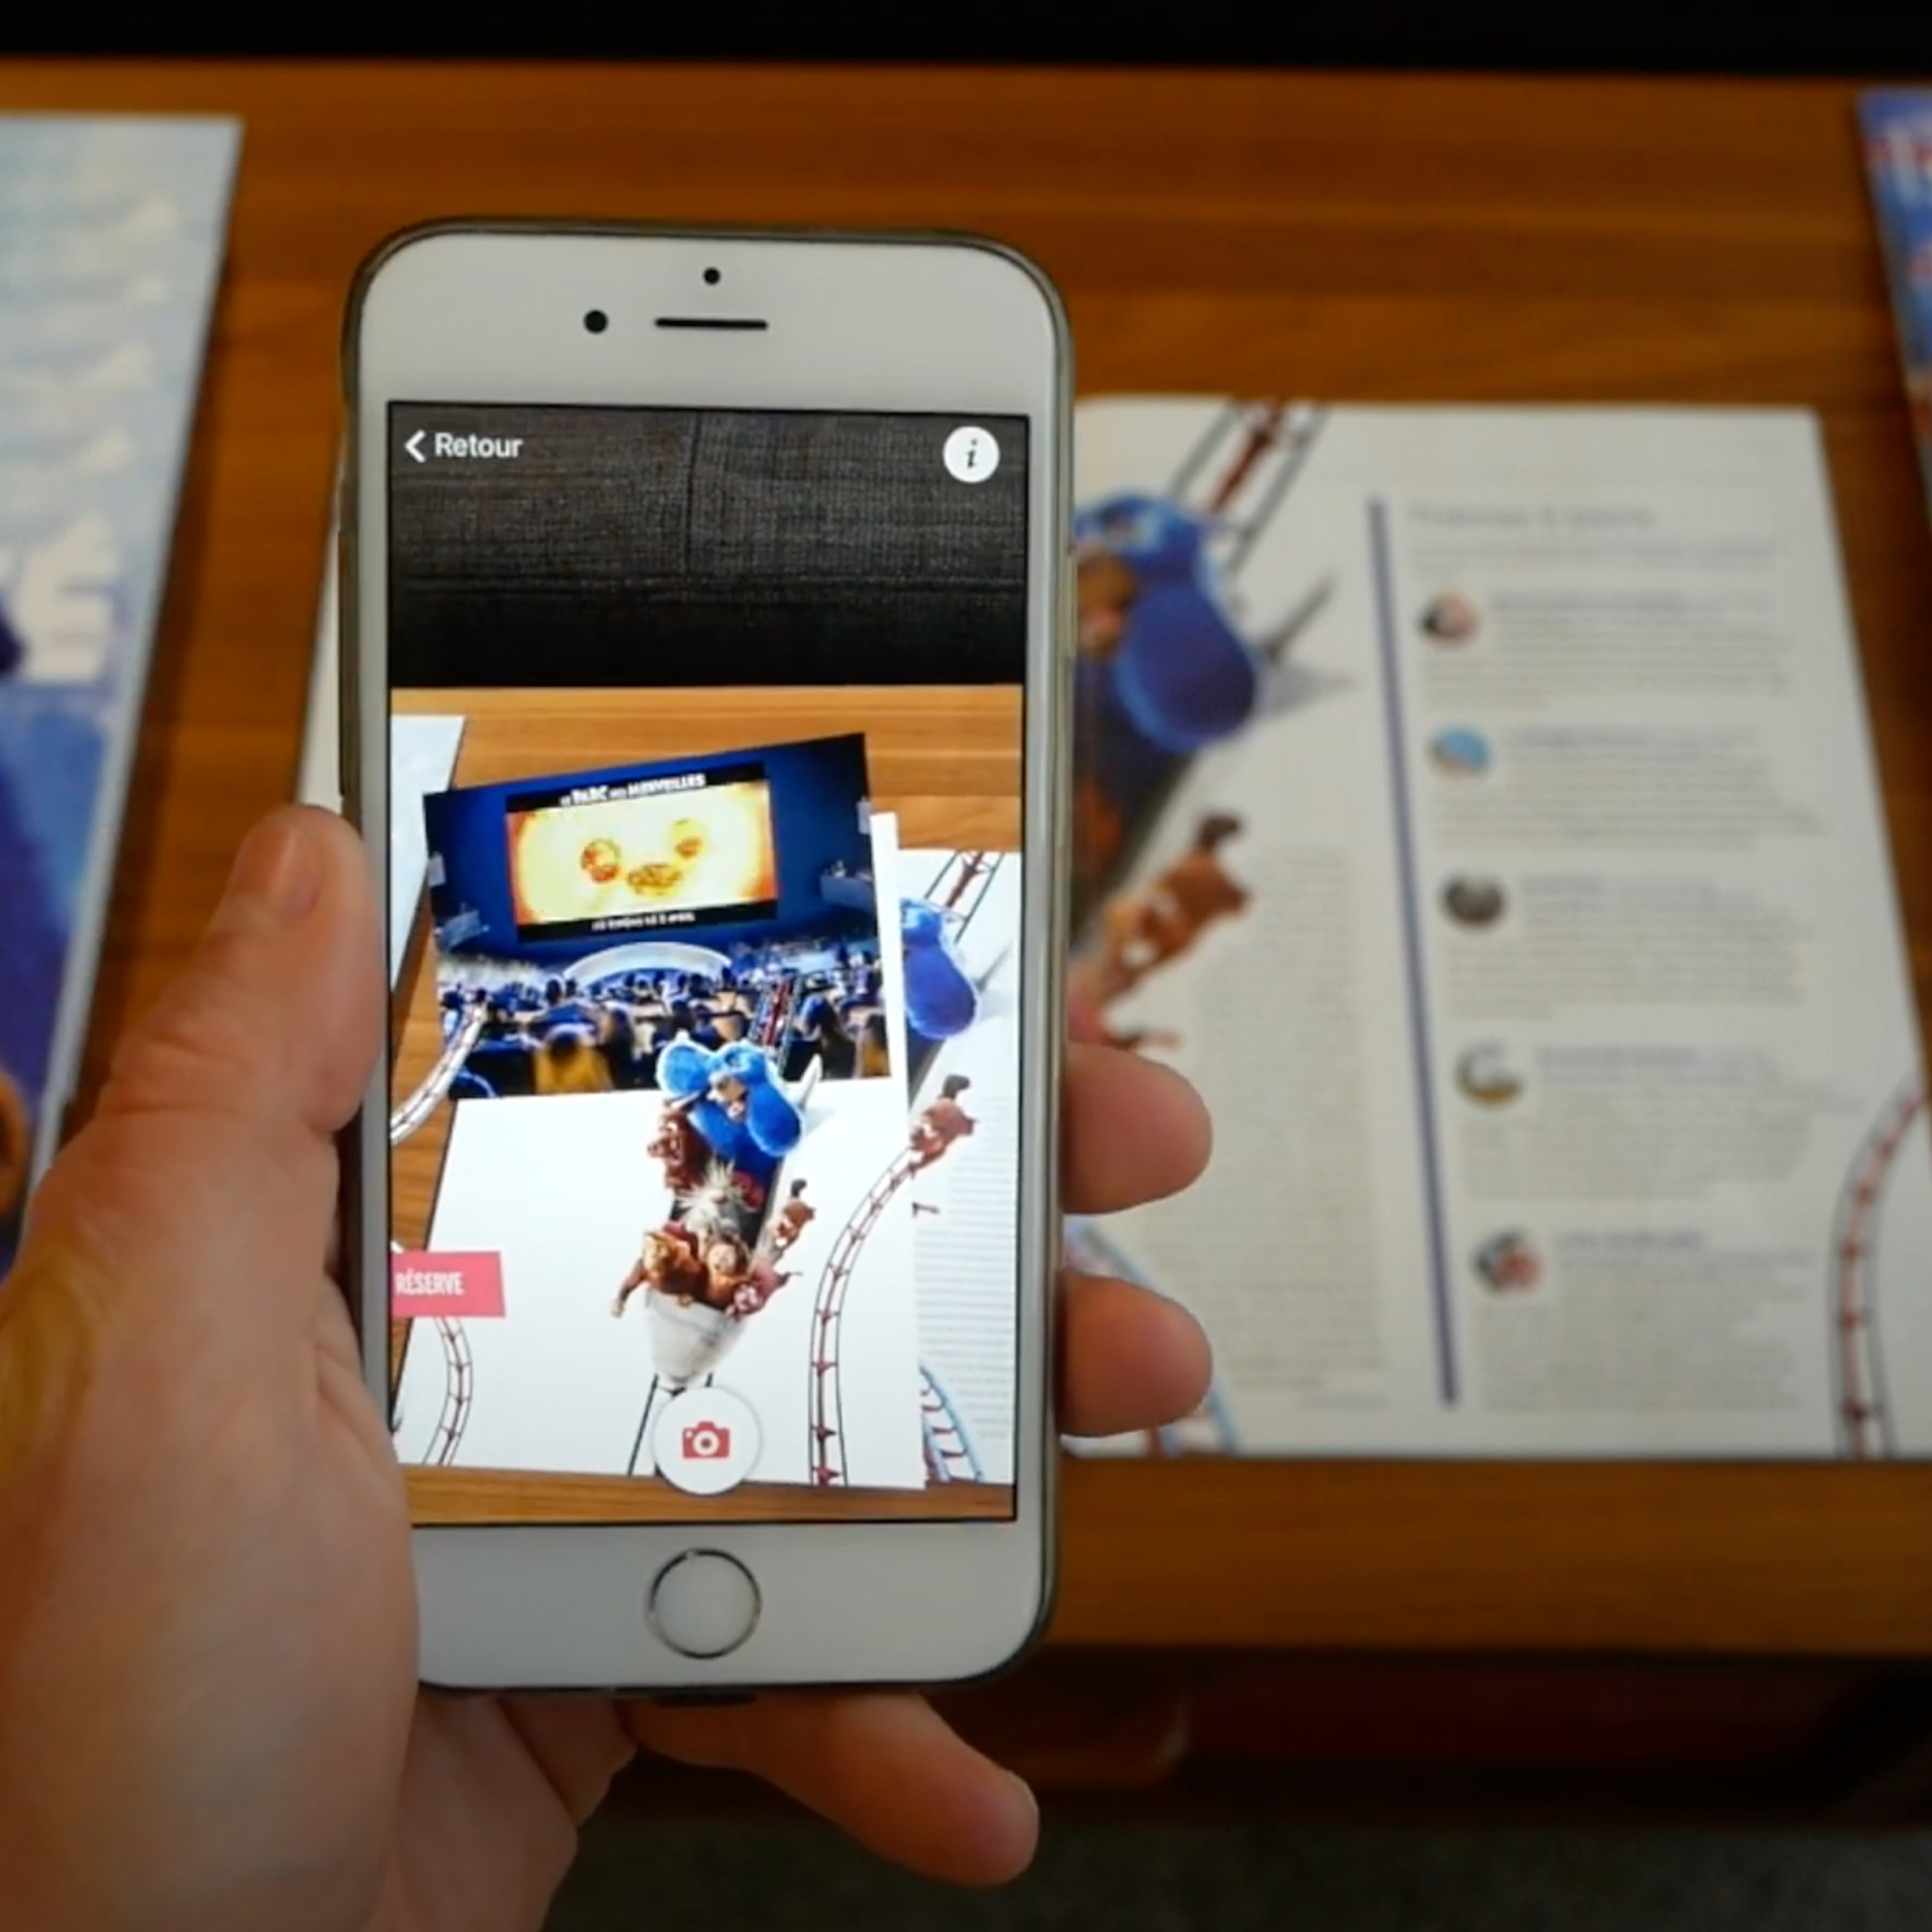 ARGOplay connecte les imprimés avec le monde digital, écran de smartphone affichant le catalogue imprimé et des augmentations, personnages du film Ratatouille